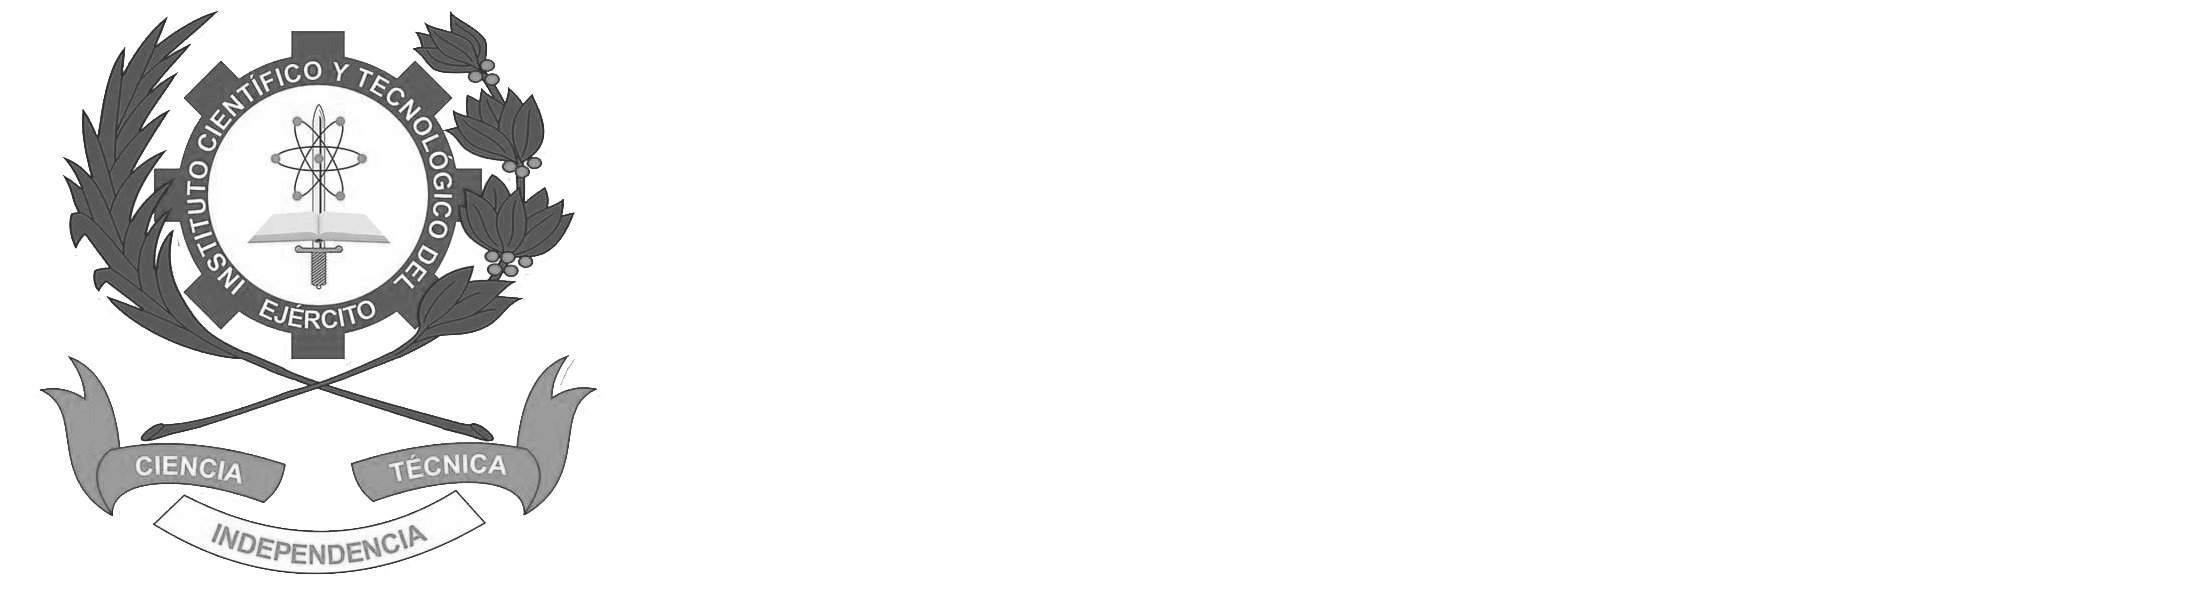 Instituto Científico y Tecnológico del Ejército 